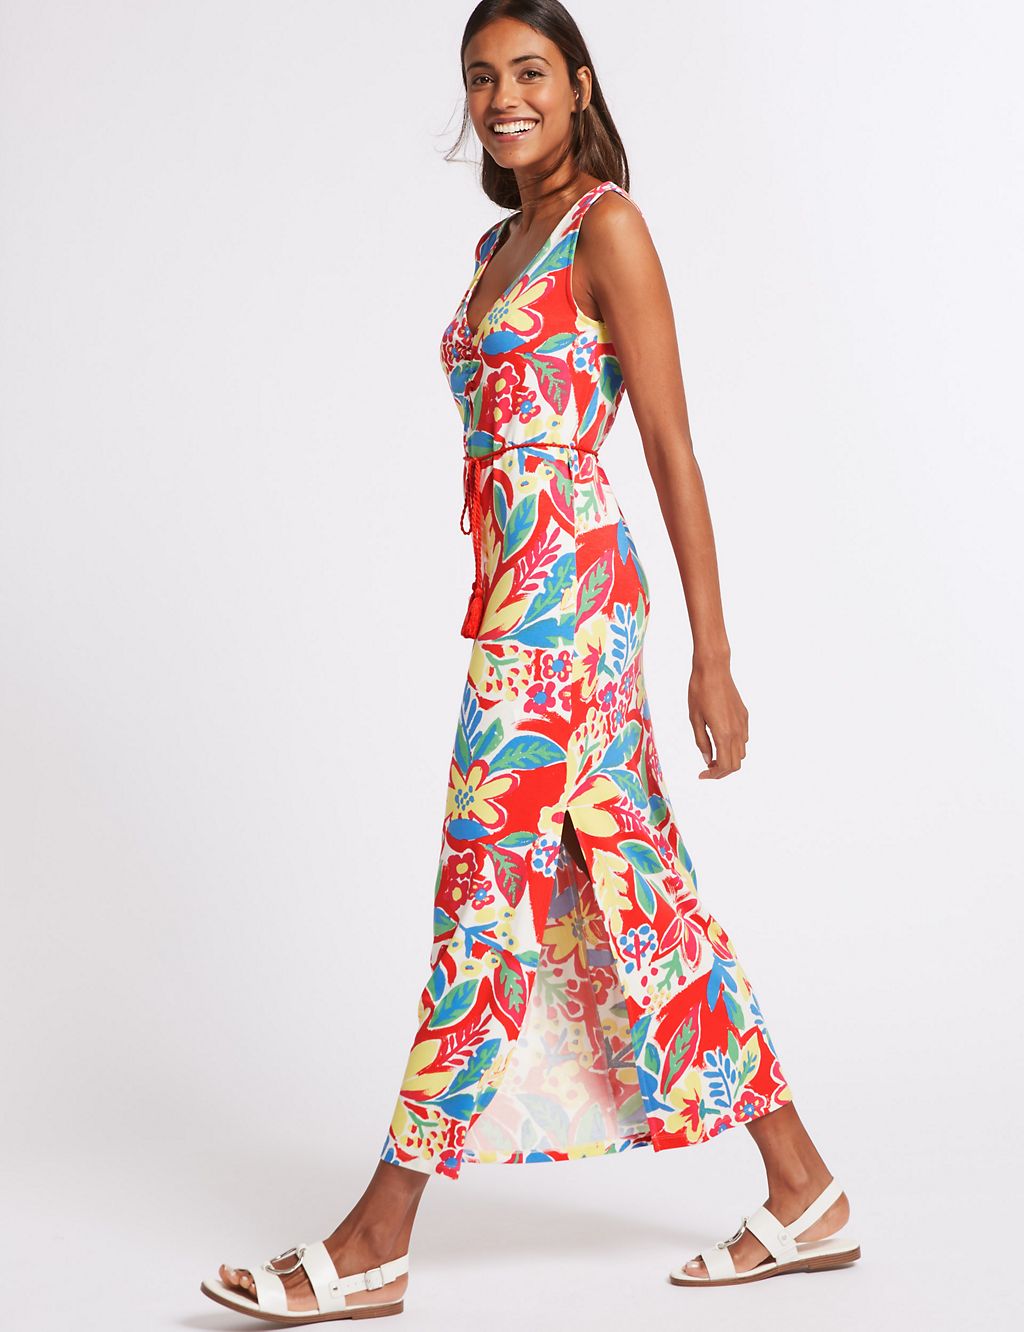 Floral Print Maxi Dress 4 of 6